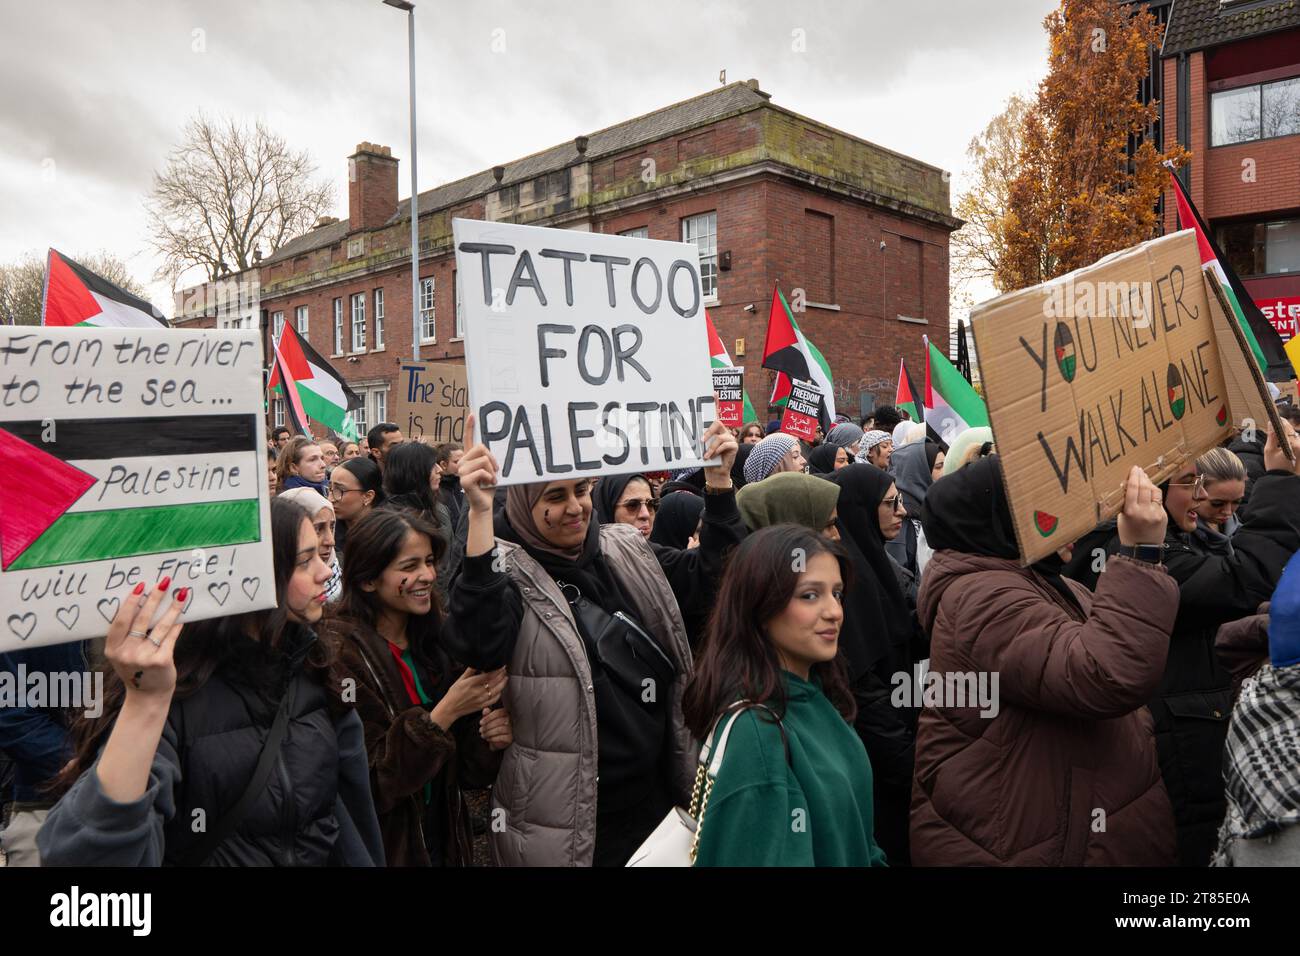 Du fleuve à la mer, Tattoo for Palestine and You Never Walk Alone signe une manifestation palestinienne dans le centre de Manchester. ROYAUME-UNI. Plus d'un millier de manifestants se sont rassemblés à Whitworth Park pour réclamer un cessez-le-feu. Ils ont ensuite marché devant l'université de Manchester le long d'Oxford Rd jusqu'au centre-ville. La police gardait des points de vente qui, selon les manifestants, avaient des liens avec Israël, y compris McDonalds et Fisher Geram. La marche s'est terminée à la cathédrale de Manchester où certains manifestants ont monté la balustrade de la cathédrale et brandi des drapeaux. Manchester UK. Photo : garyroberts/worldwidefeatures.com Banque D'Images